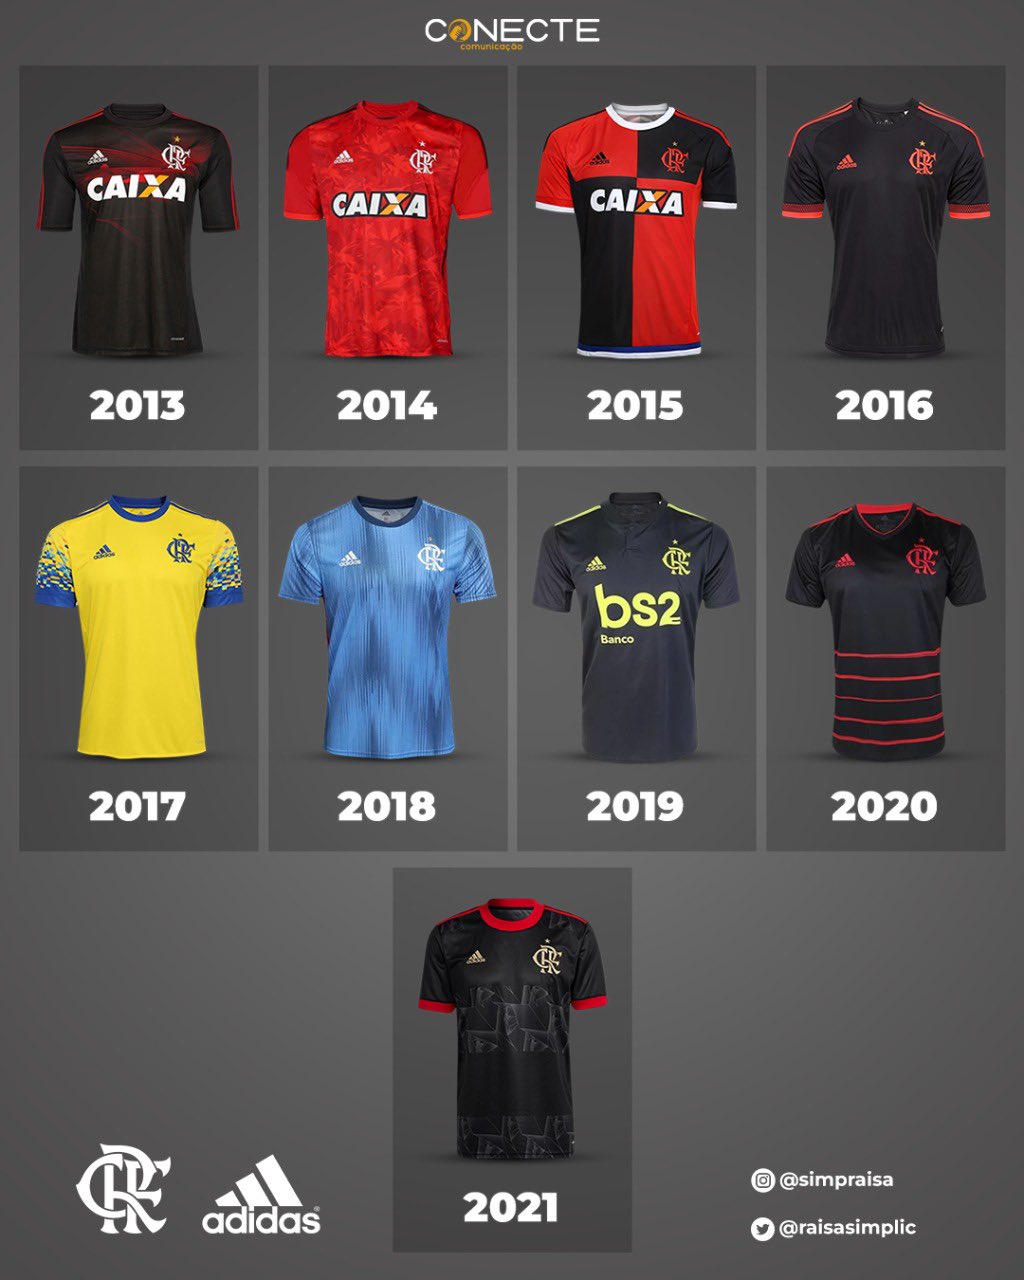 Raisa Simplicio on X: Adidas está lançando hoje os modelos de terceira  camisa dos times. Esses são os modelos de #Flamengo, #Internacional e  #Cruzeiro, qual o mais bonito?  / X